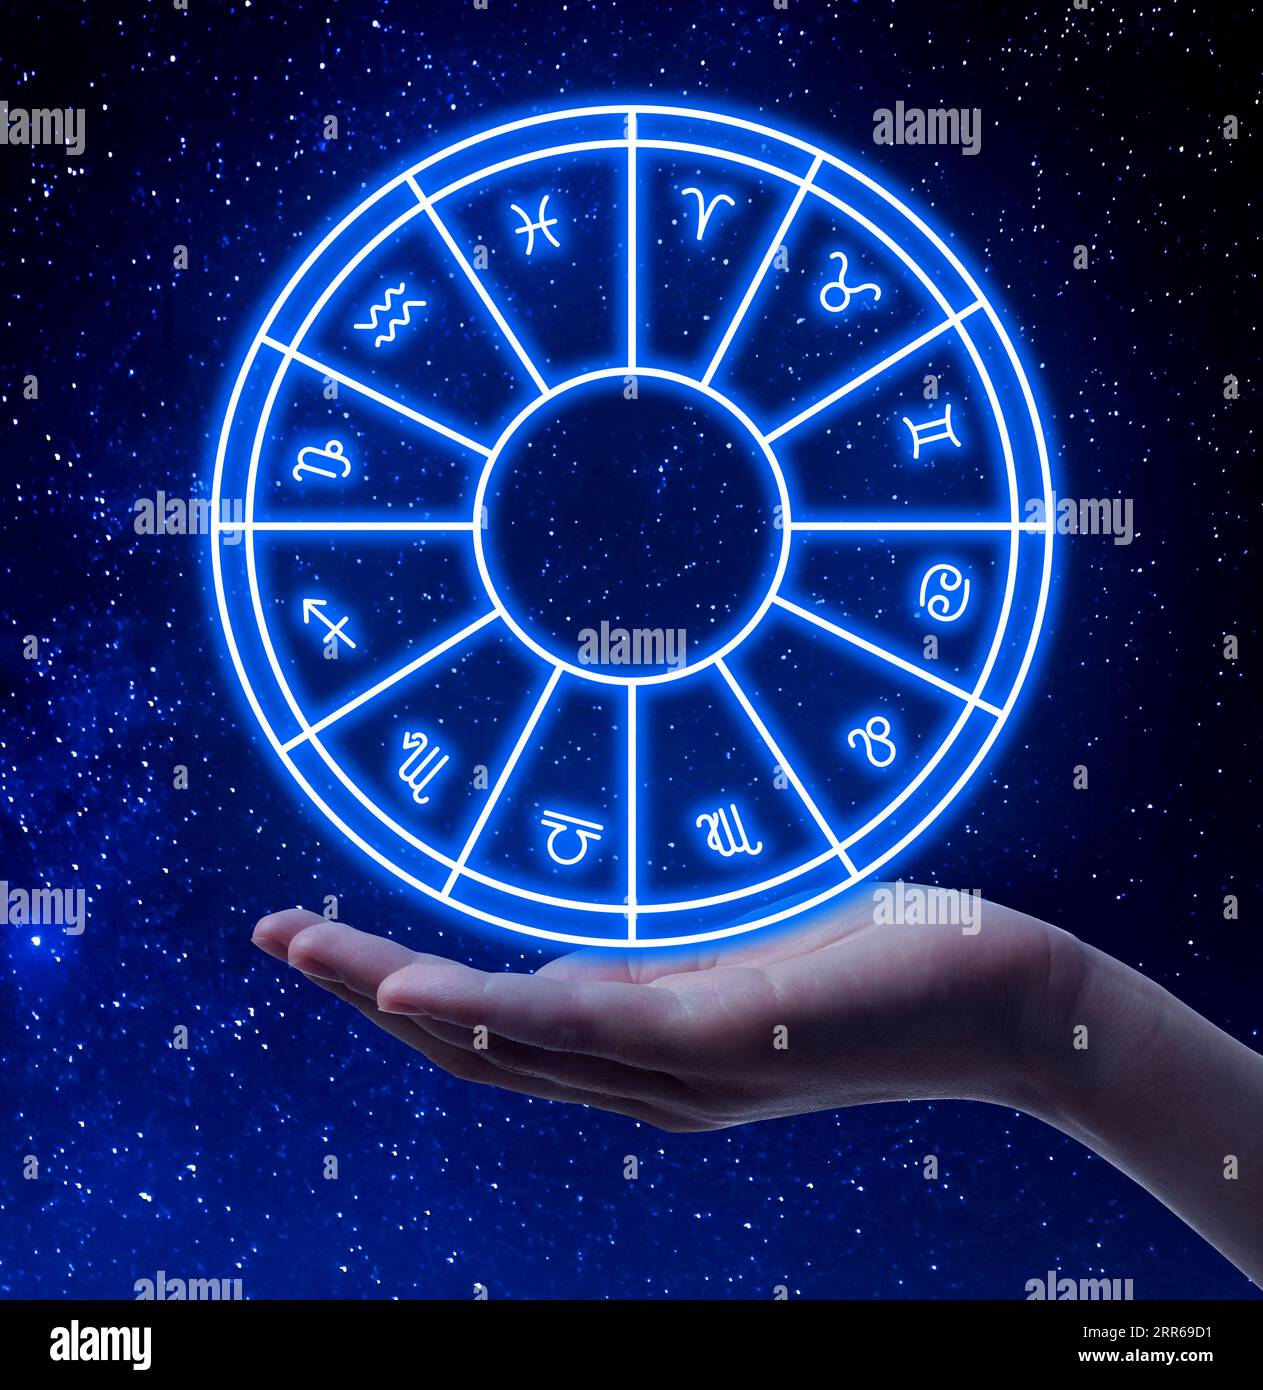 Astrologia. Donna con ruota zodiacale contro il cielo stellato notturno, primo piano Foto Stock